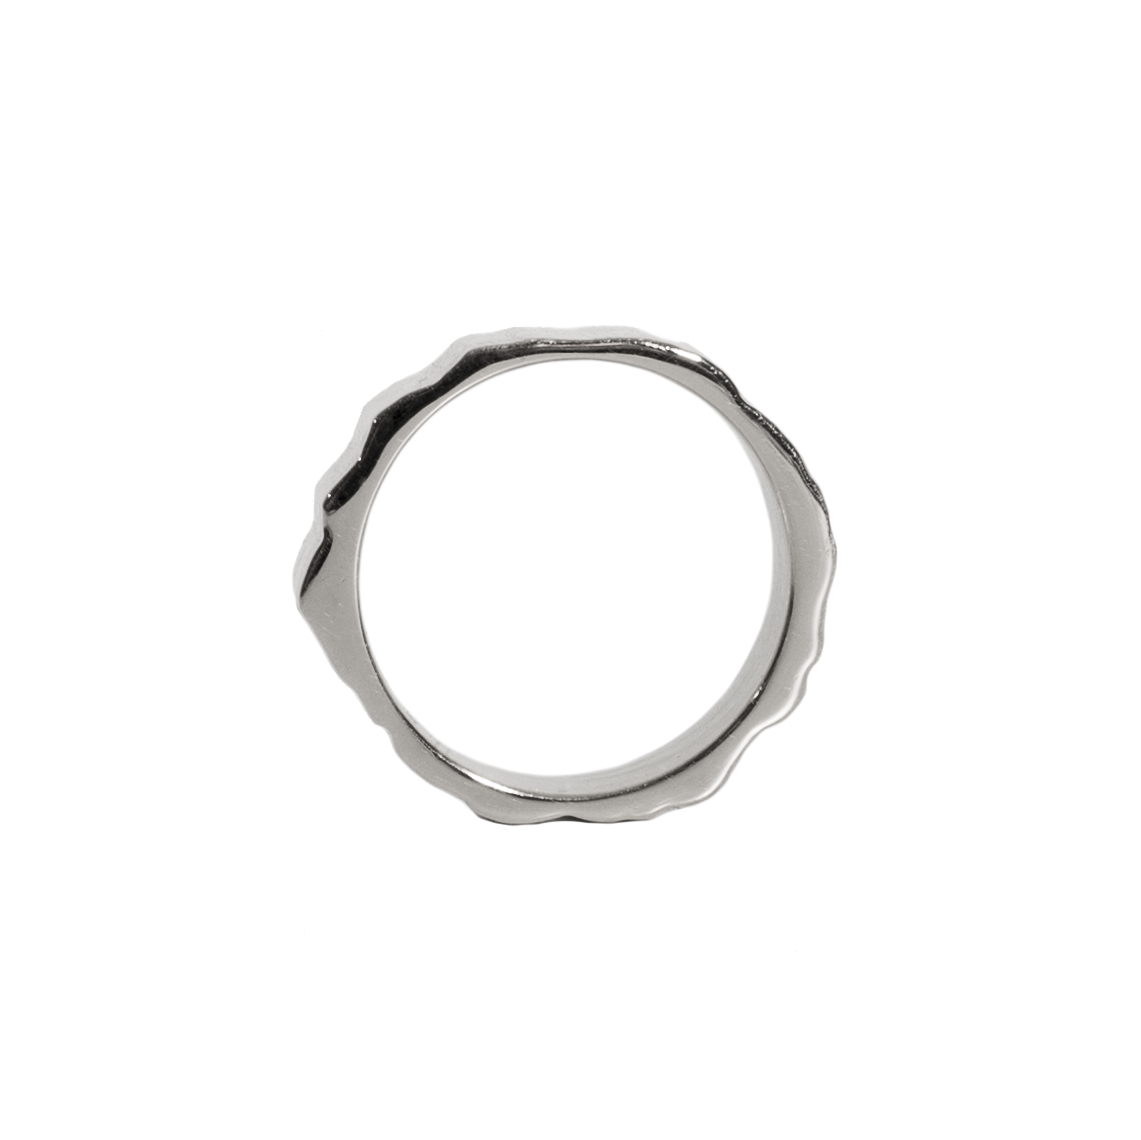 Monti Dachstein Ring